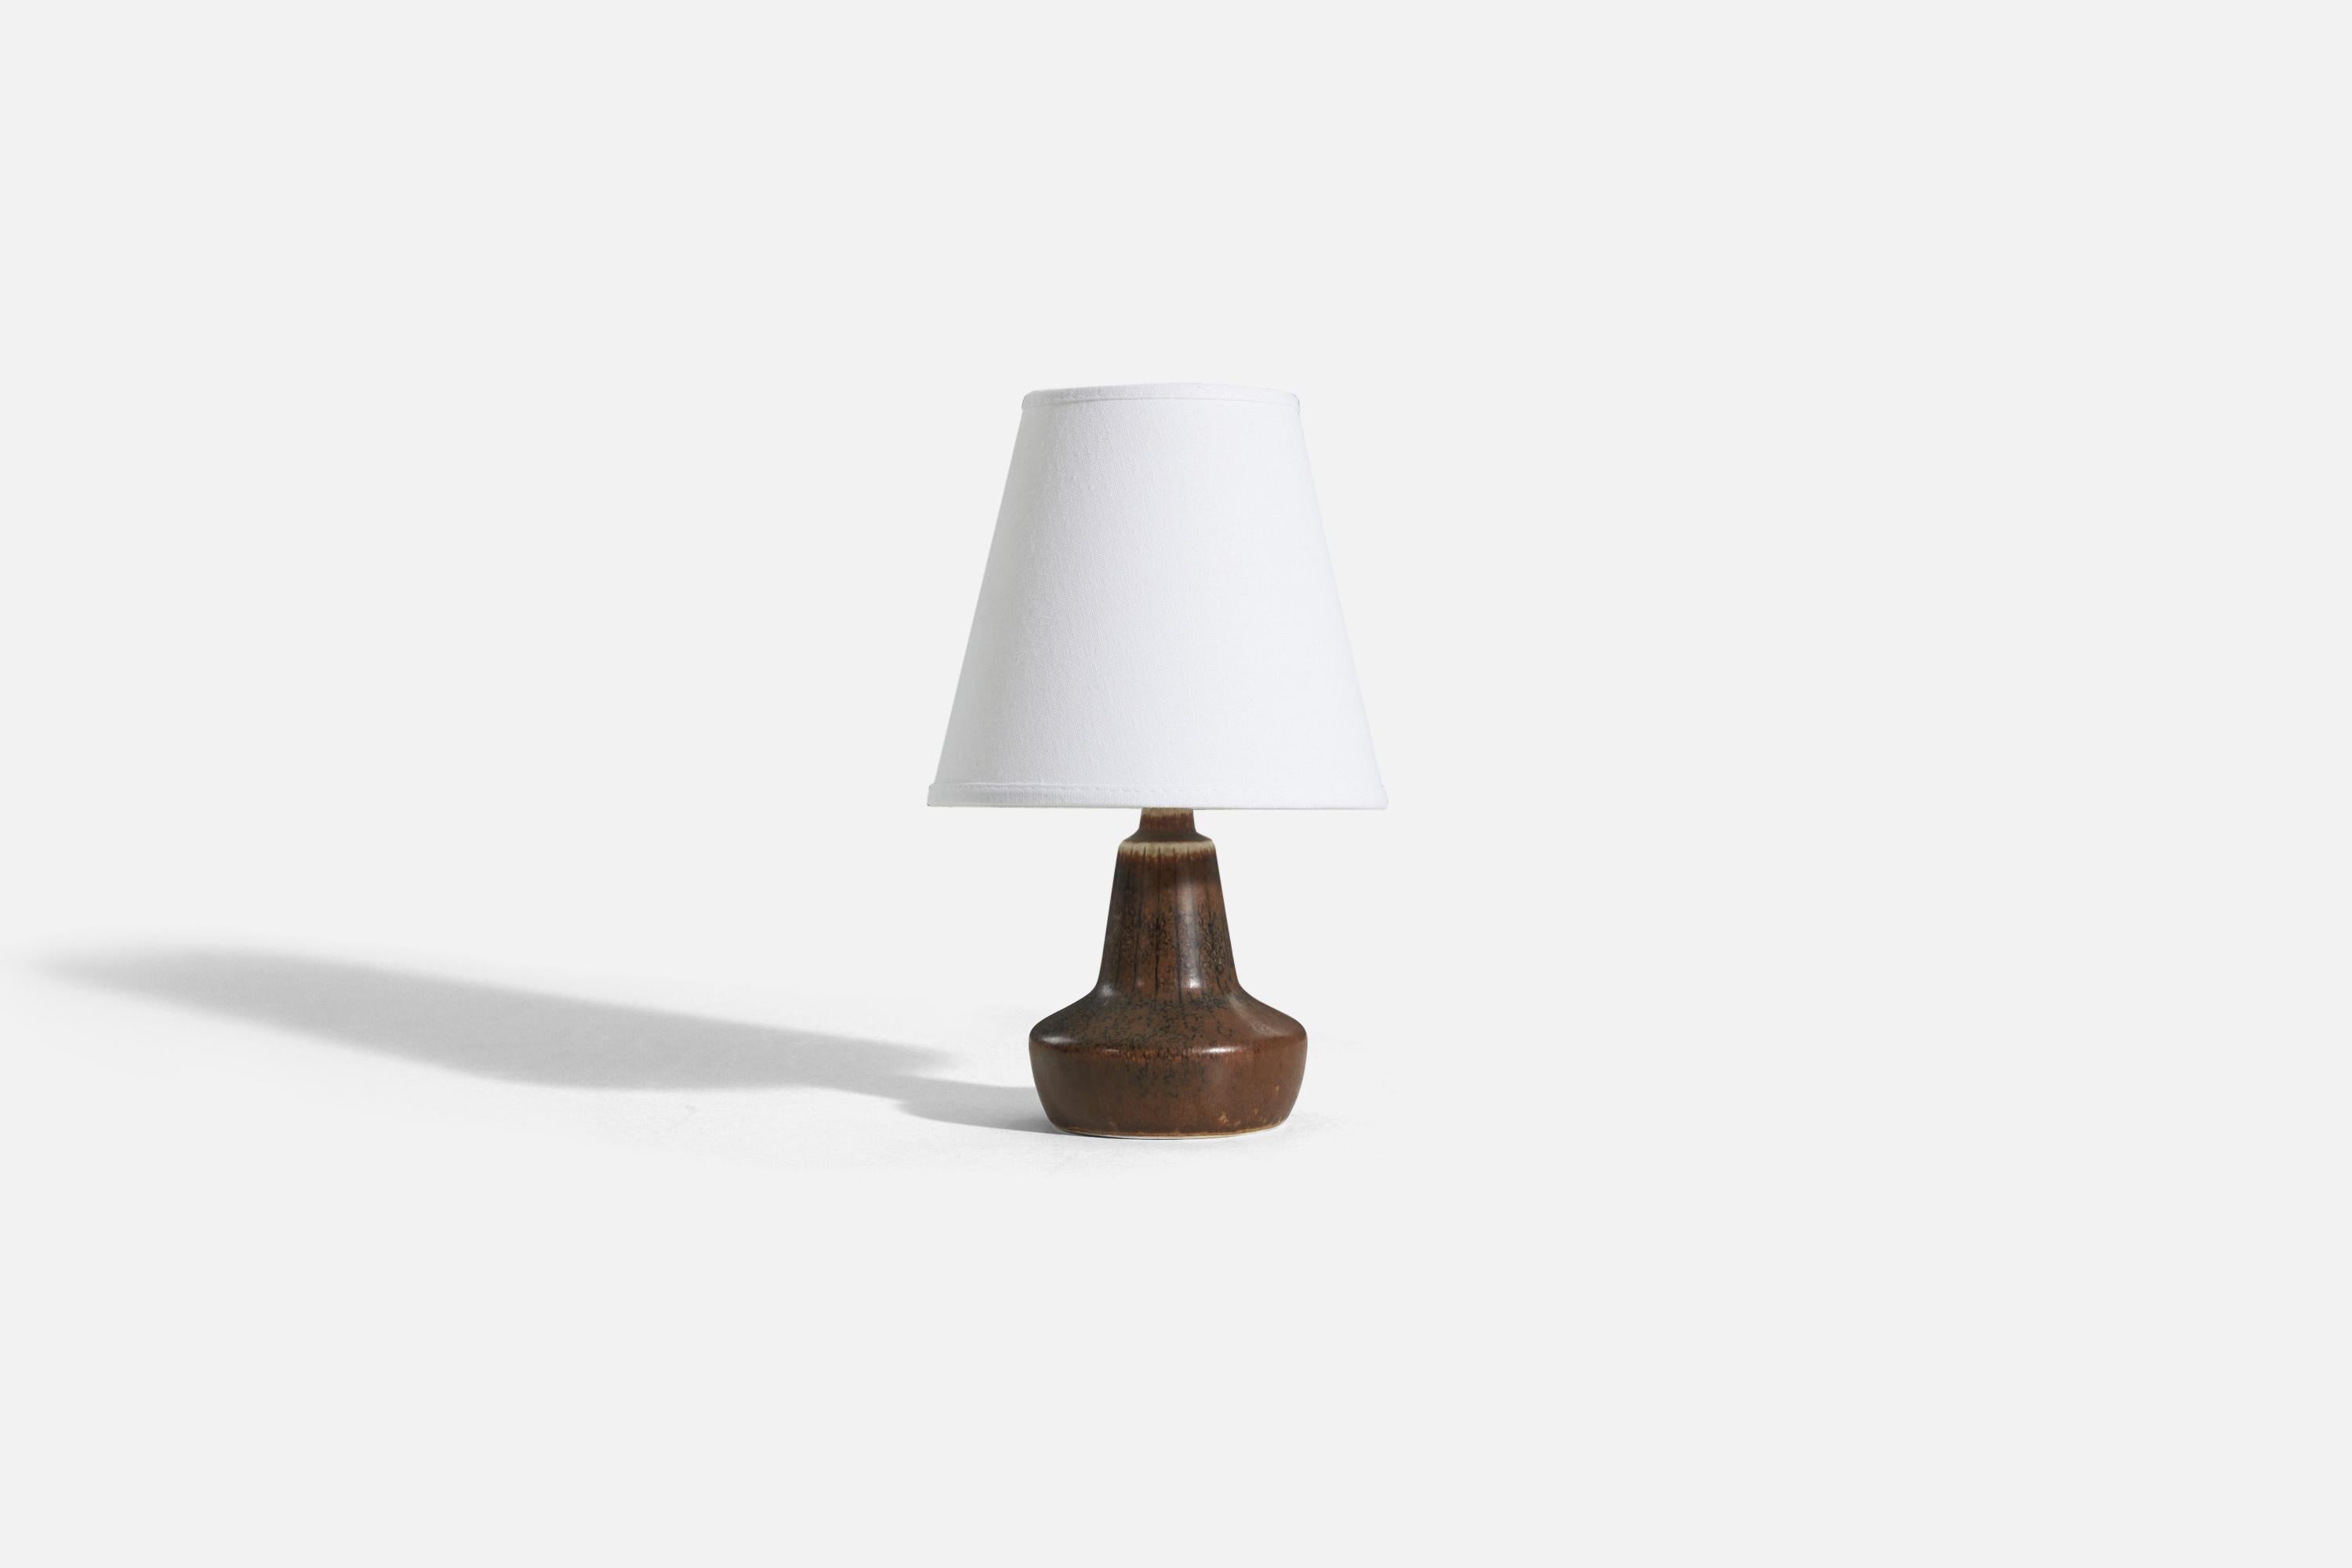 Lampe de table en grès émaillé brun, conçue par Gunnar Nylund et produite par Rörstrand, Suède, années 1950.

Vendu sans abat-jour. 
Dimensions de la lampe (pouces) : 7.125 x 4,1875 x 4,1875 (H x L x P)
Dimensions de l'abat-jour (pouces) : 4 x 7 x